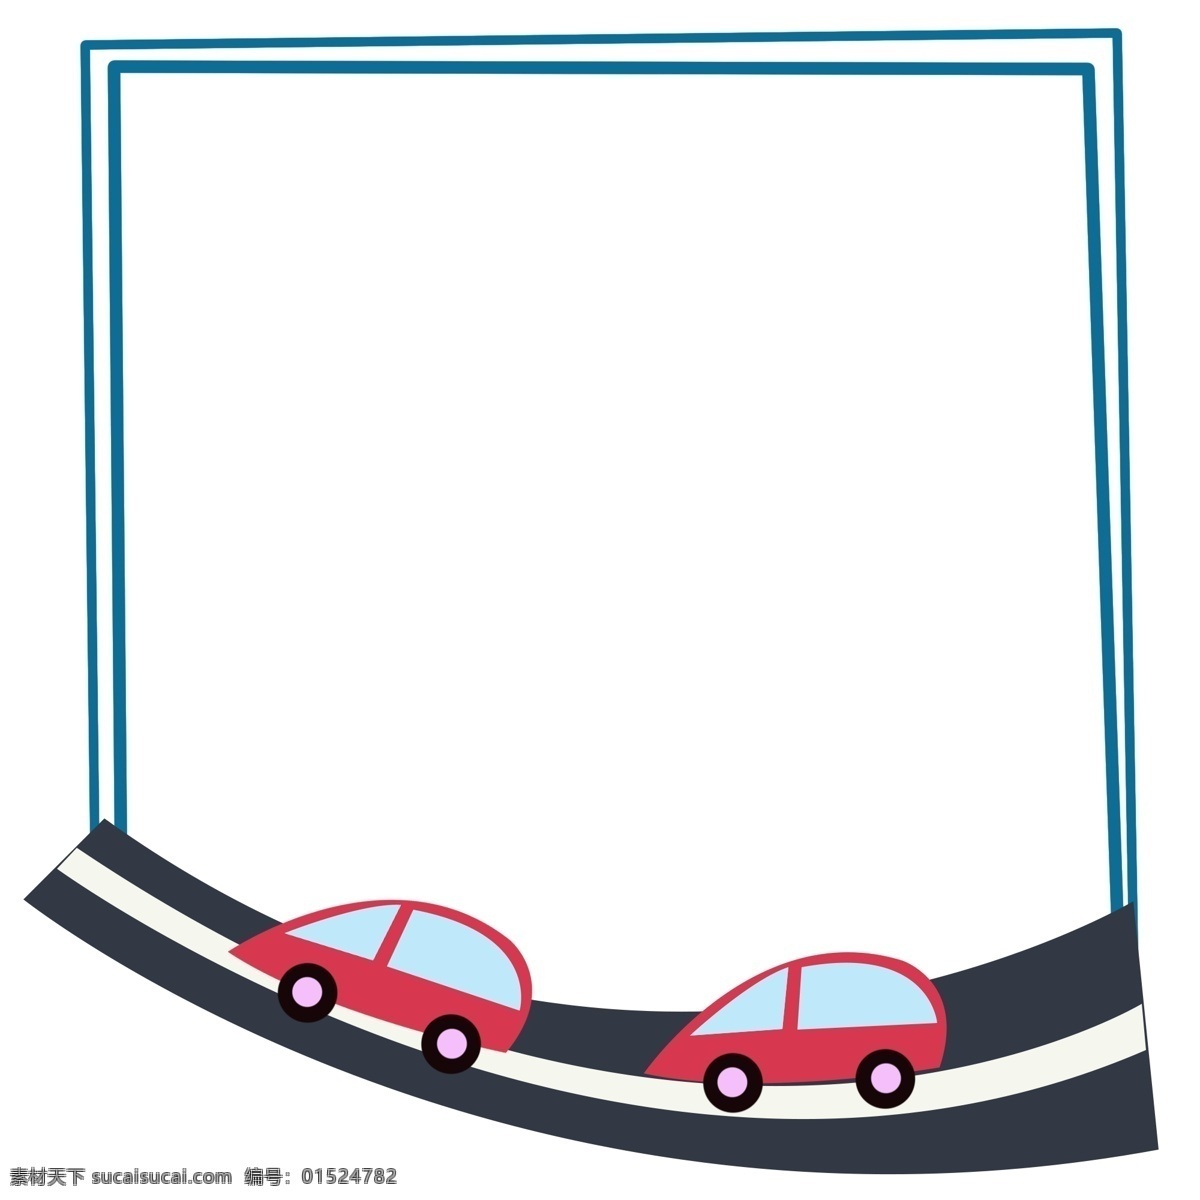 汽车 边框 卡通 插画 蓝色的边框 卡通插画 边框插画 简易边框 边框装饰 框架 汽车的边框